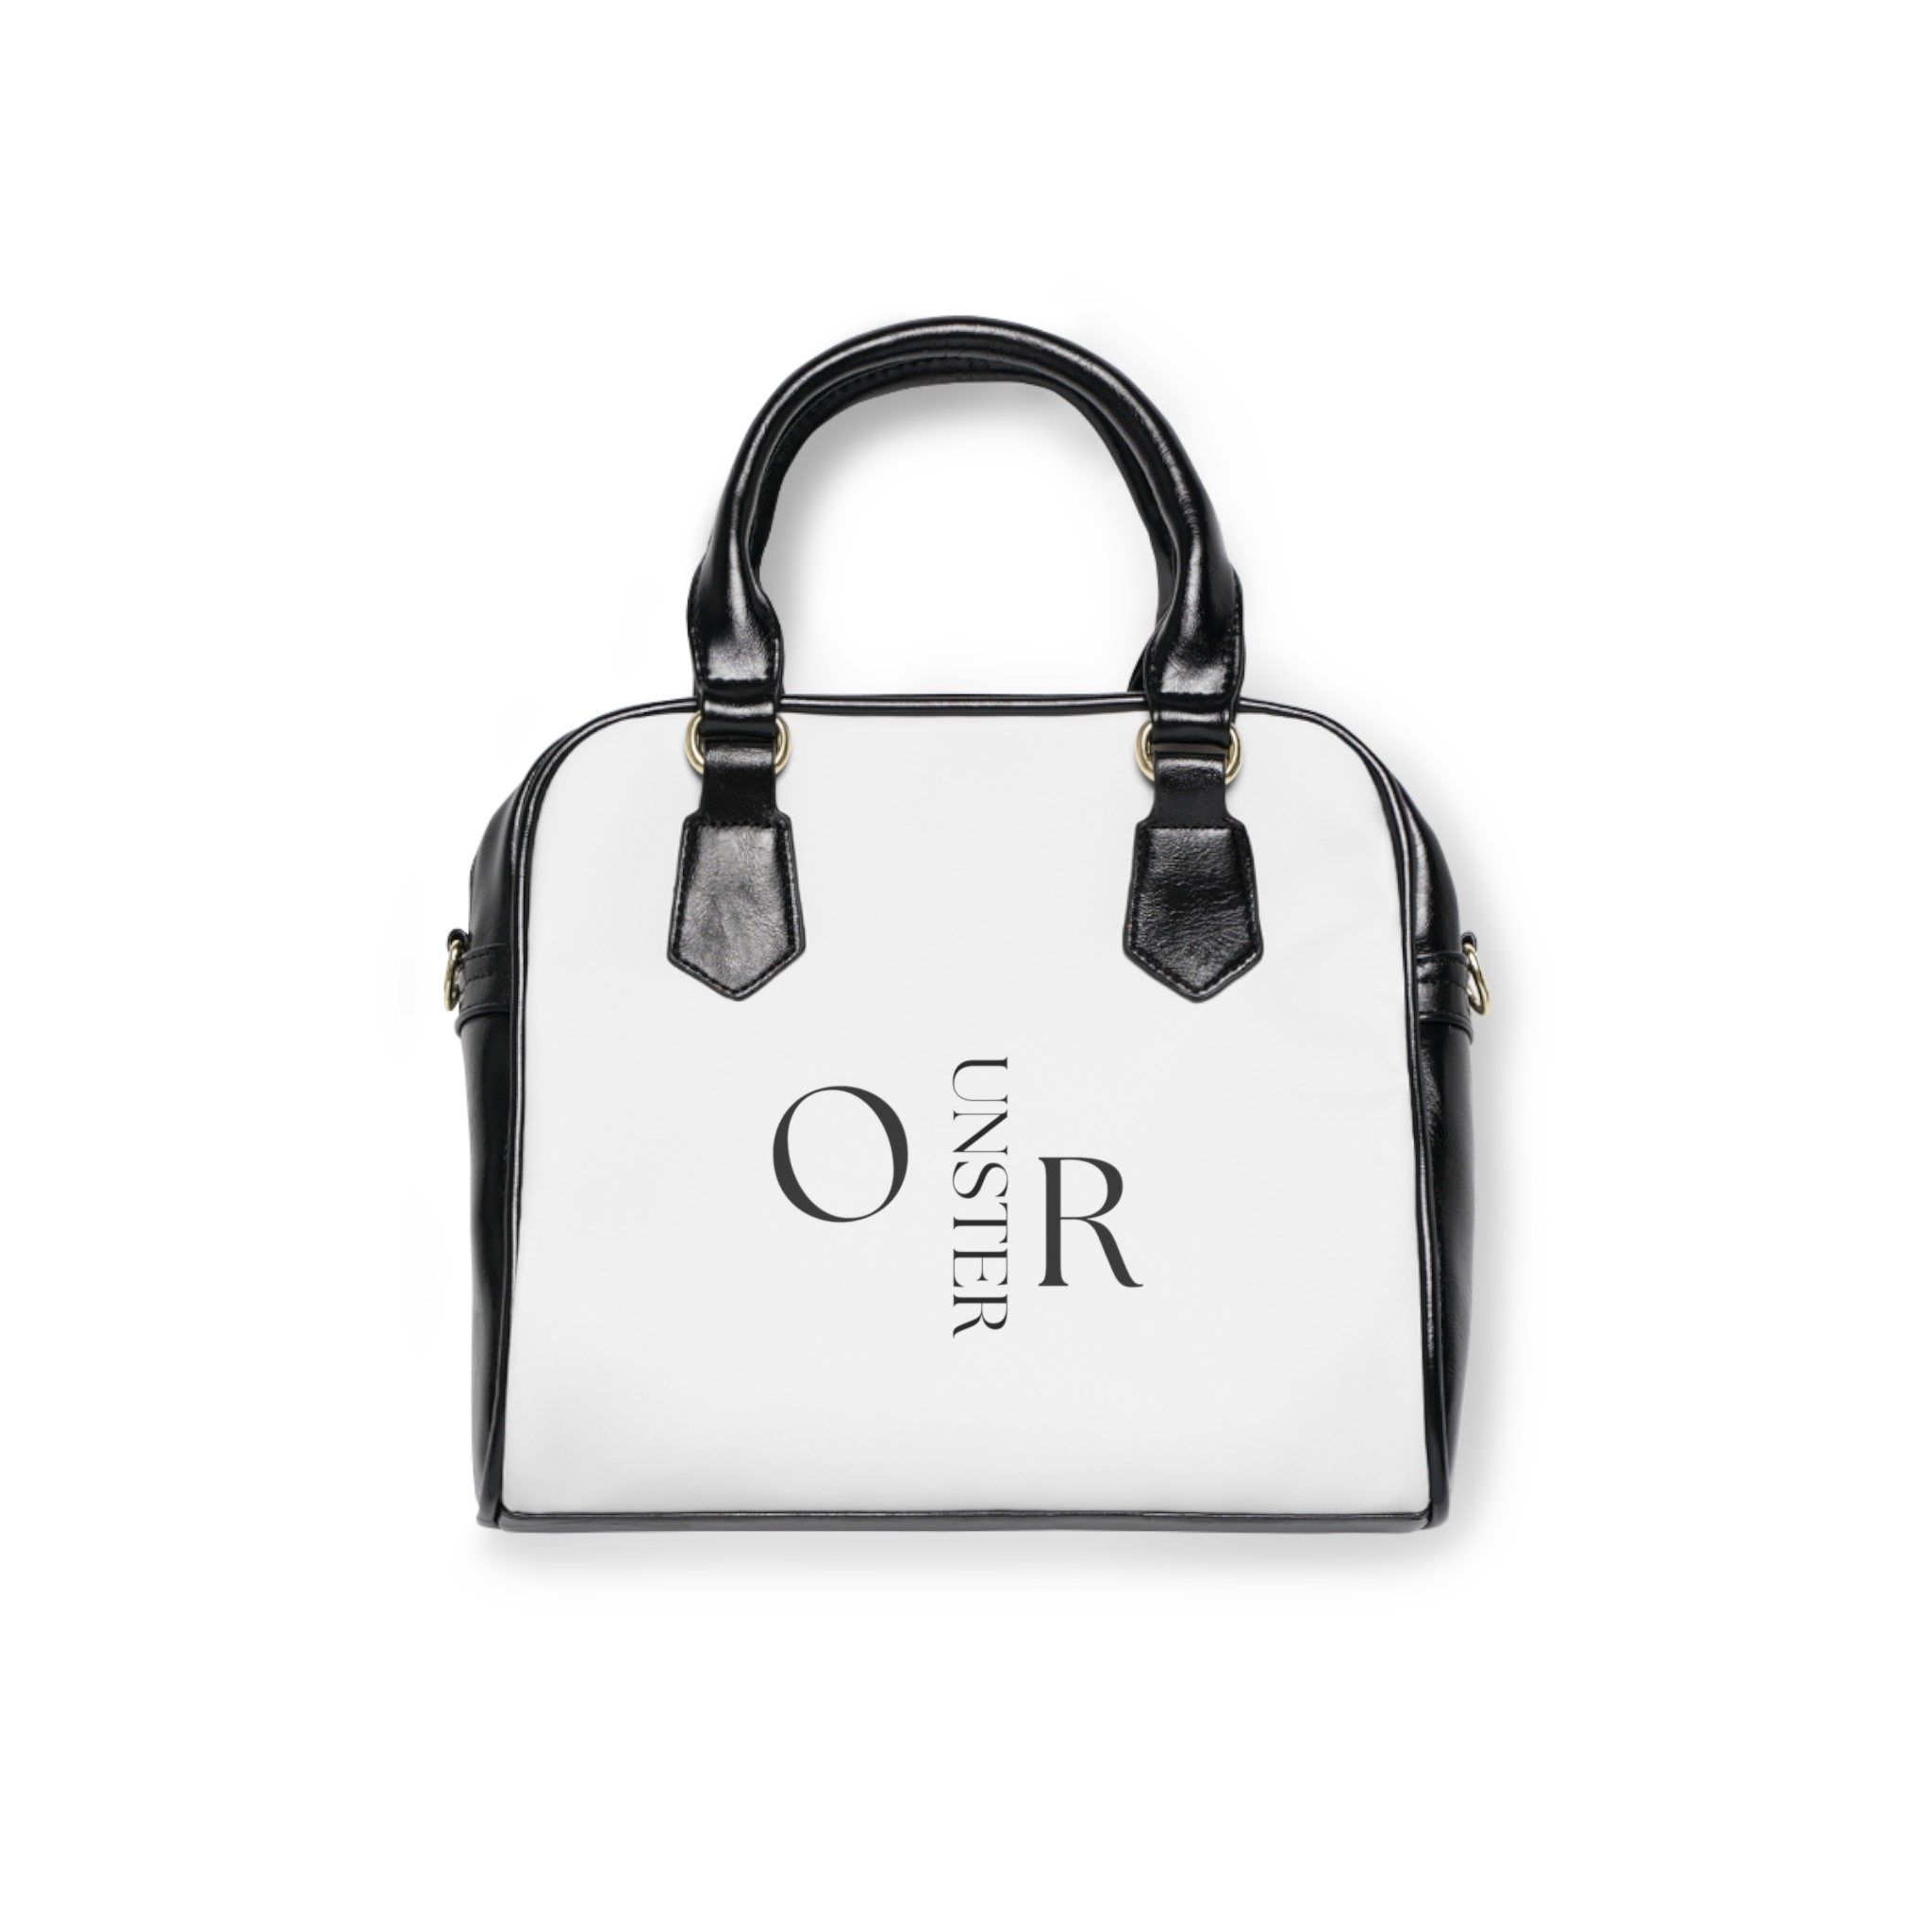 Buy Black White Handbag Online In India -  India